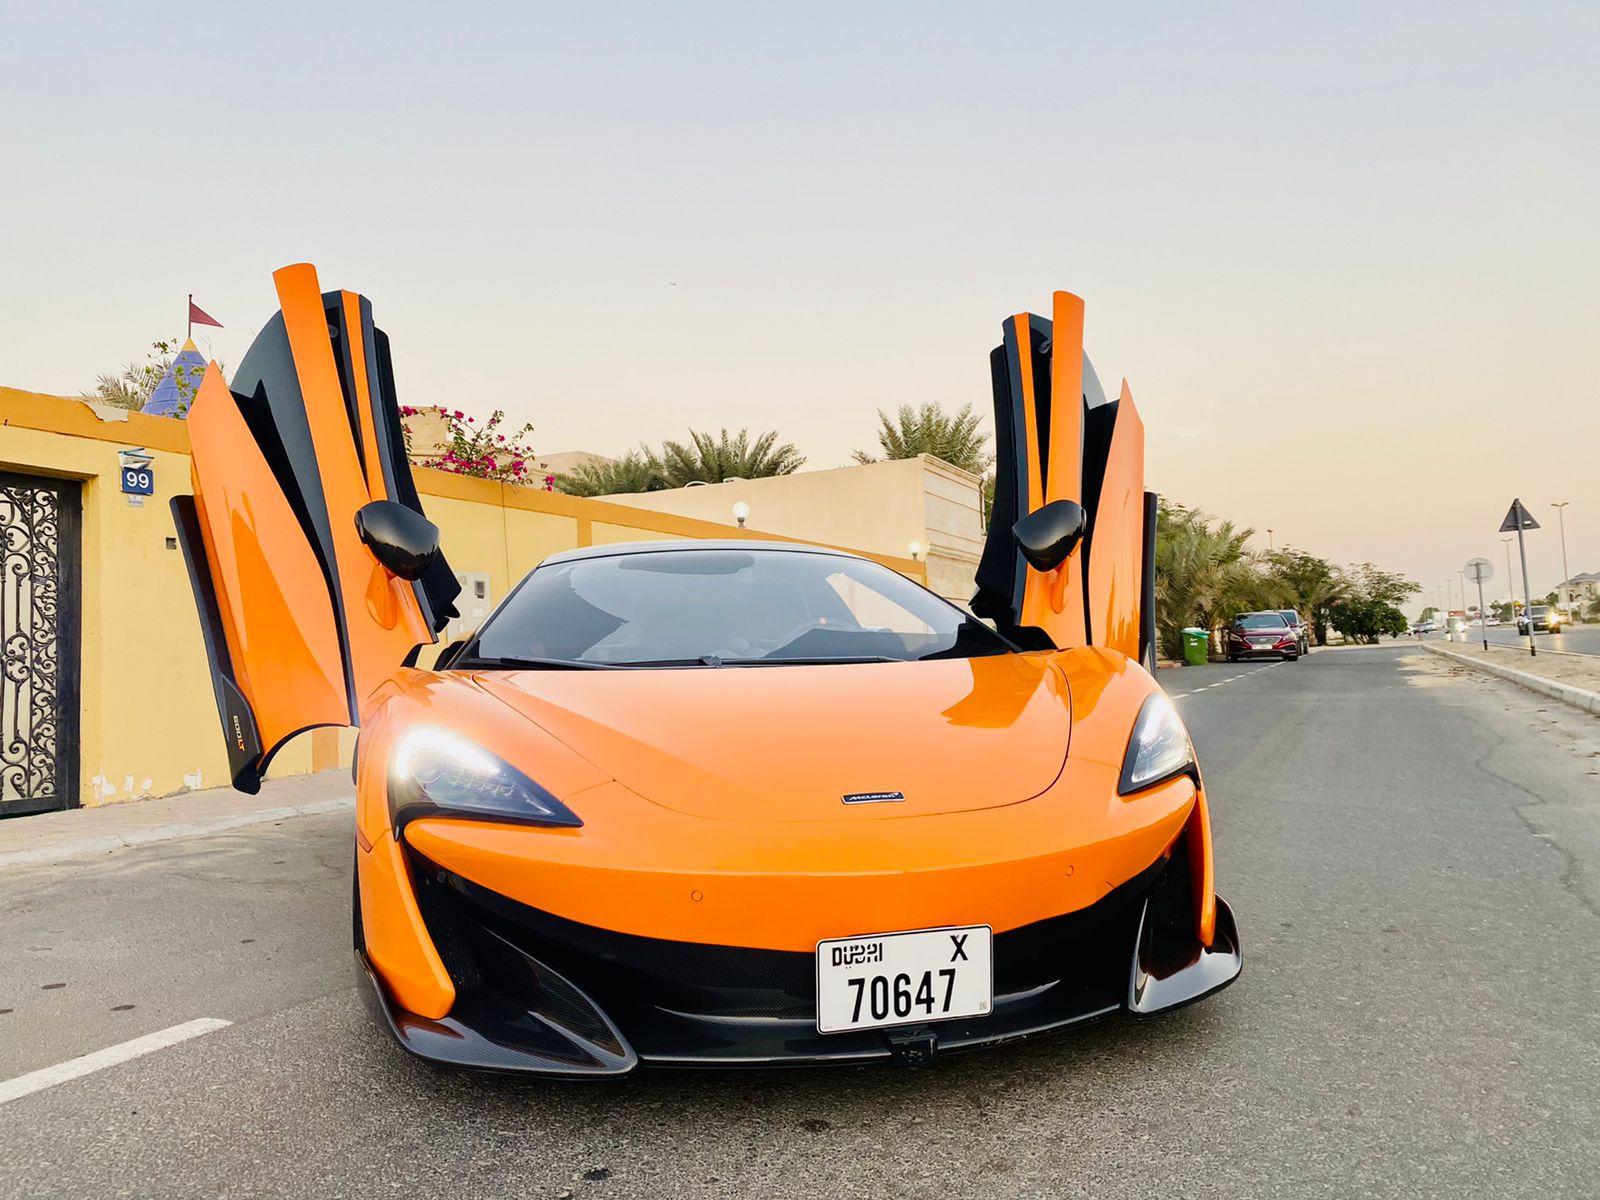 MCLAREN 600 LT 2021 Listed By Exford | Rent a Car Dubai | Cheap Car Rental Dubai AED 50/Day | Car Hire UAE